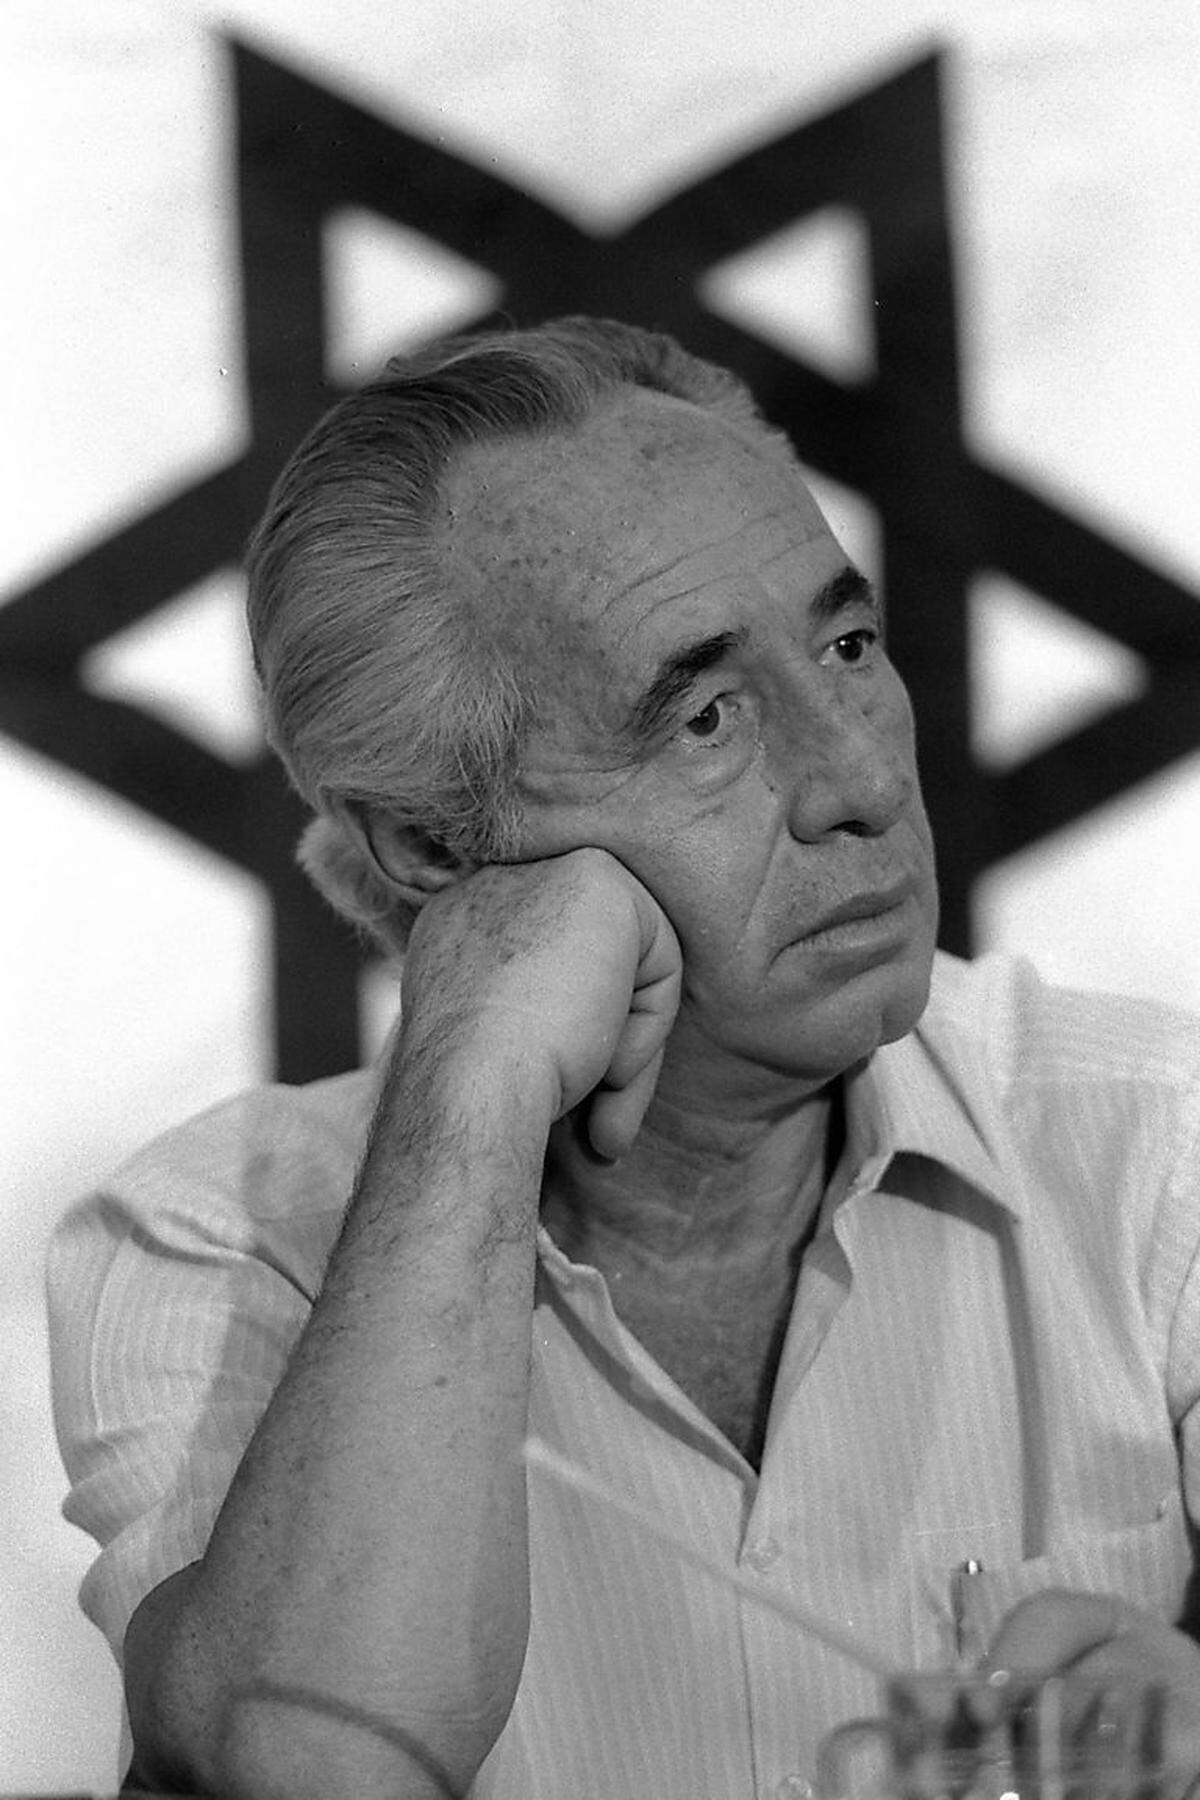 Shimon Peres wurde am 2. August 1923 in Wiszniewo (damals Polen, heute Weißrussland) geboren, als Sohn eines Holzhändlers. Die Familie wanderte bereits 1934 nach Israel aus. Schon bald wurde der junge Shimon politisch aktiv, schloss sich bereits mit 16 der Arbeiterbewegung an.